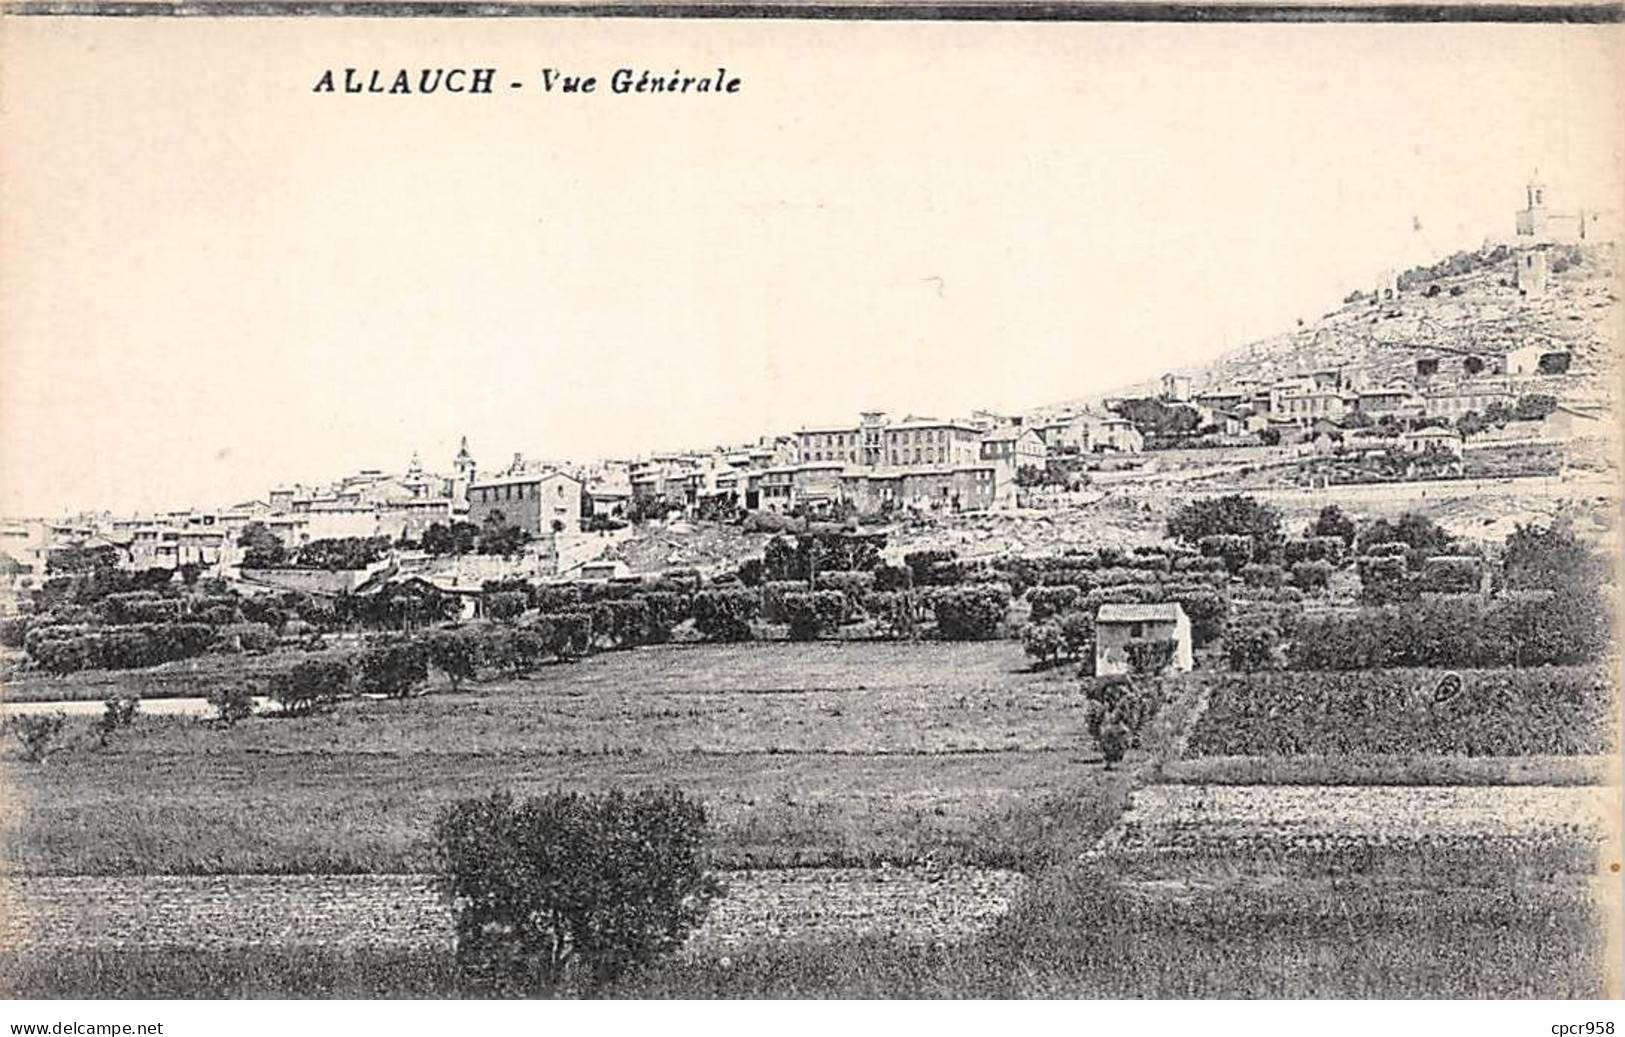 13 - AULLAUCH - SAN47188 - Vue Générale - Allauch